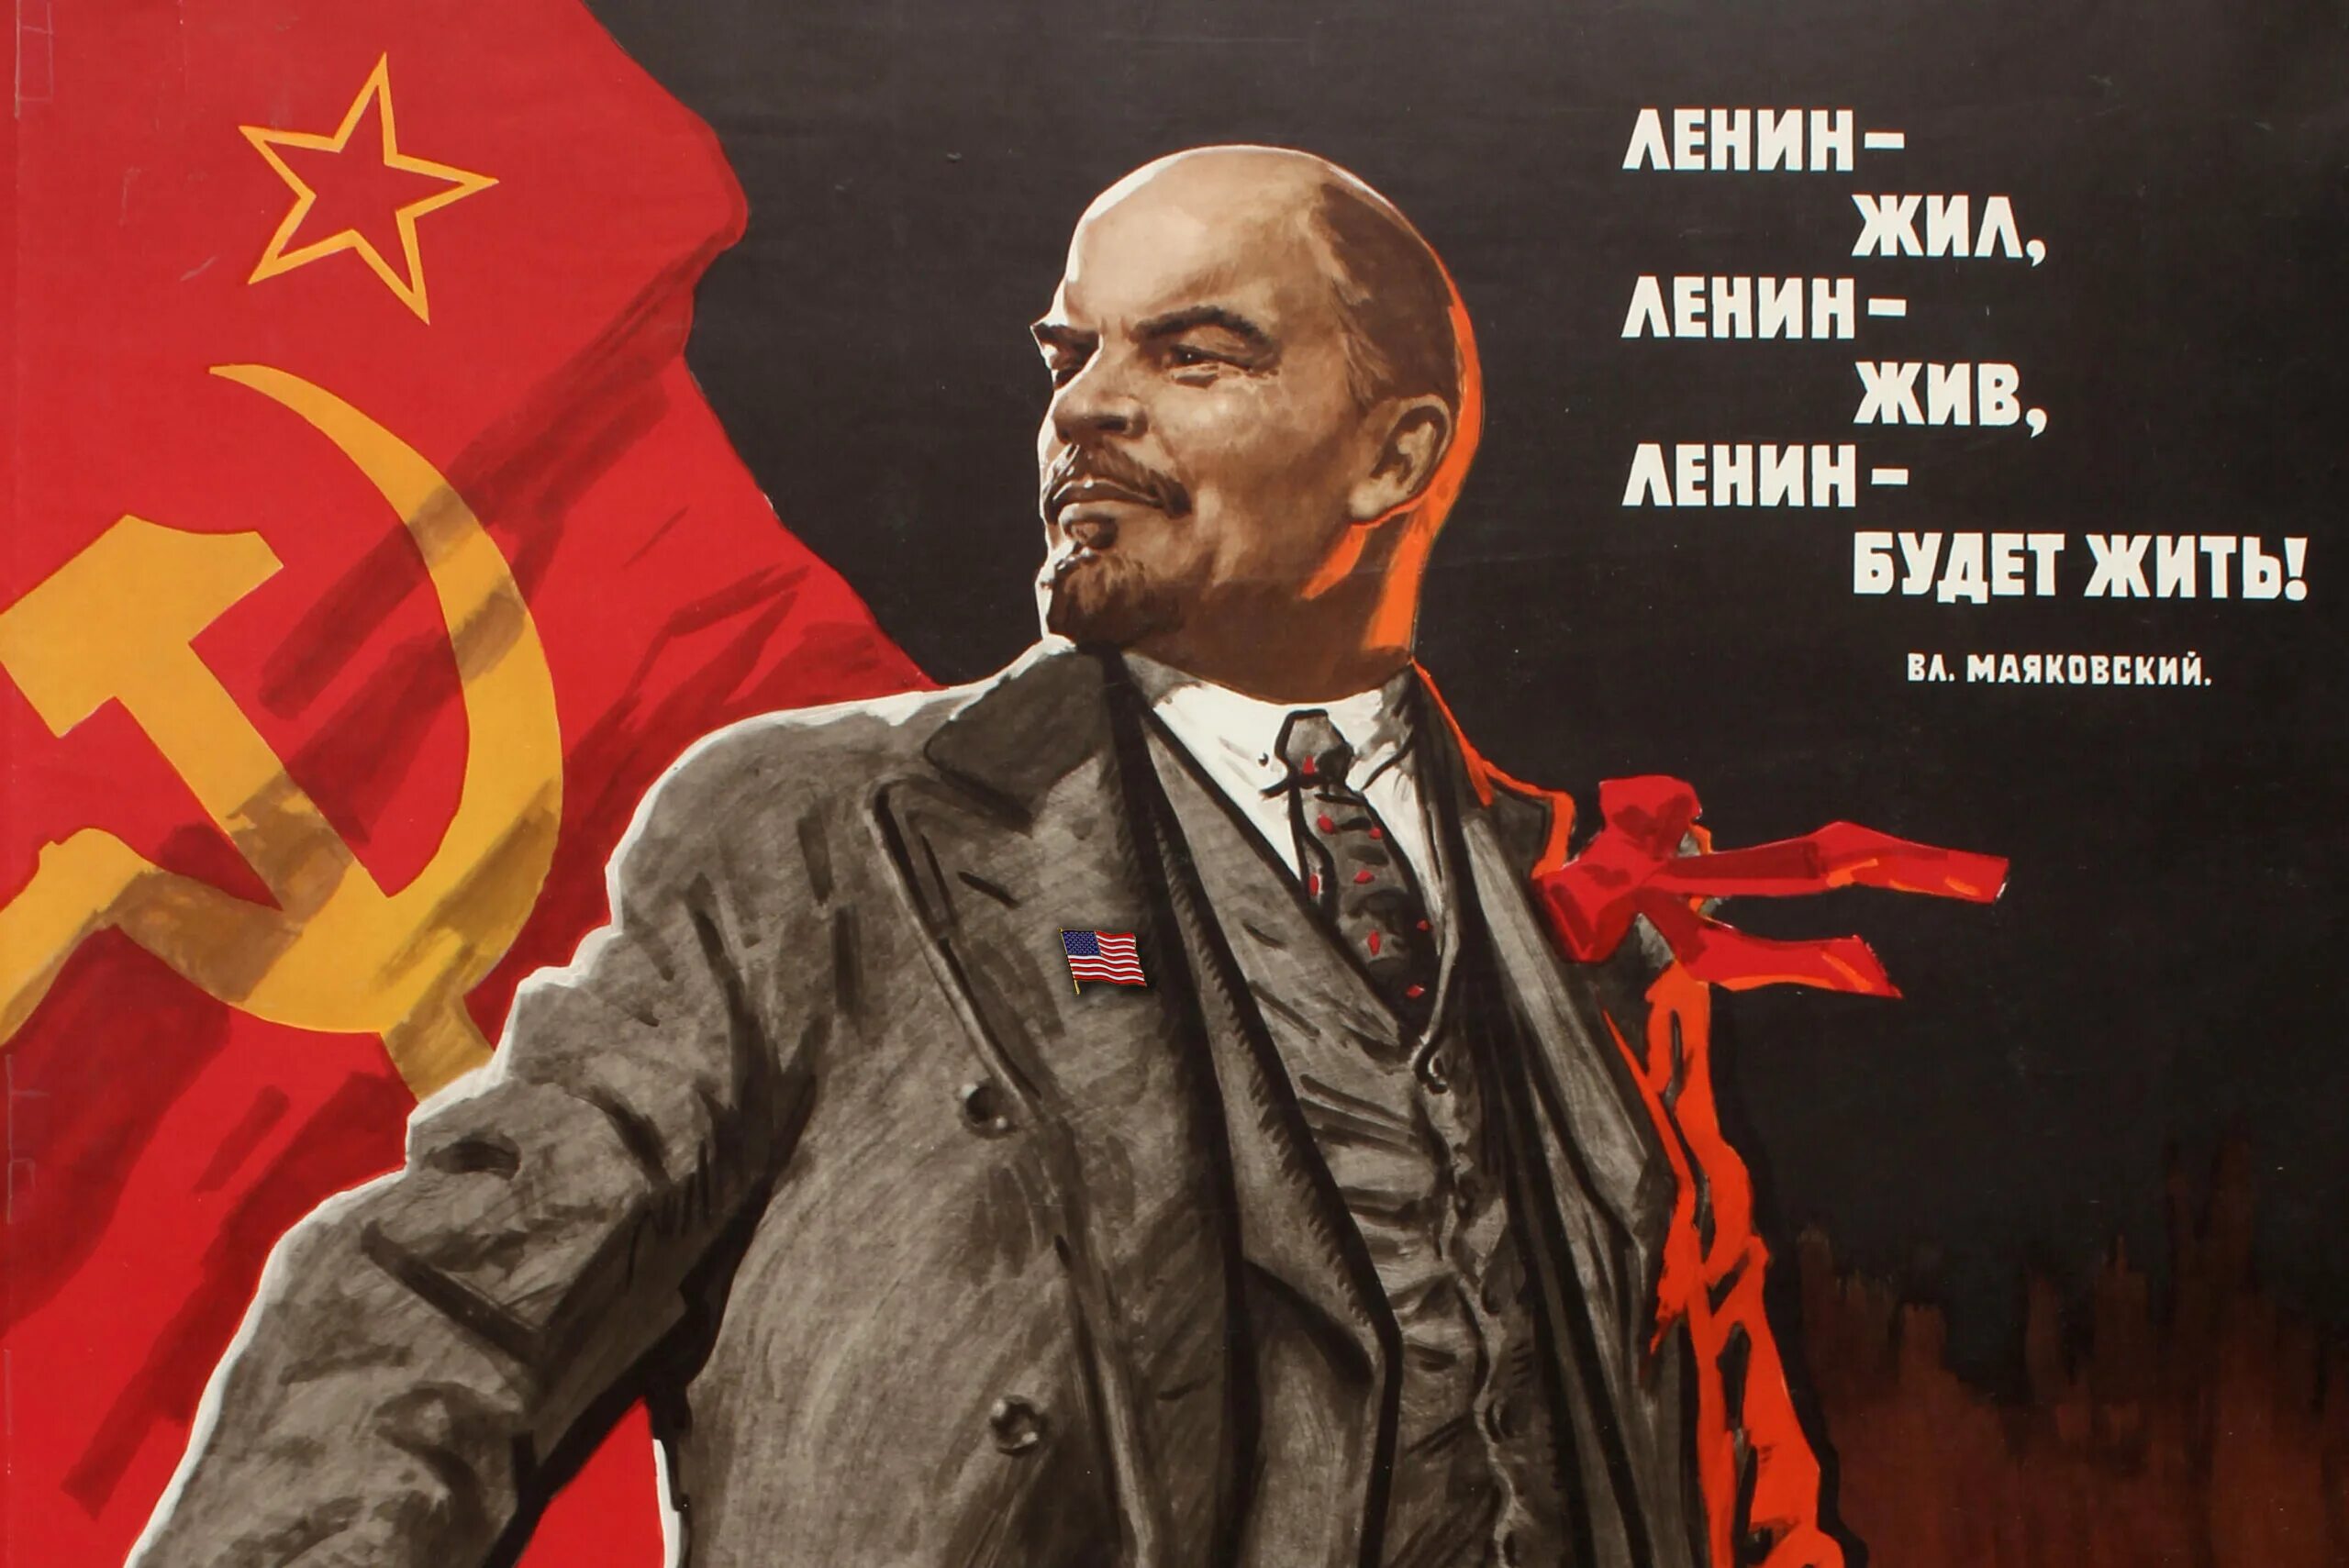 День и год рождения ленина. Плакат Ленин жил Ленин жив Ленин будет жить. Ленин жил Ленин жив Ленин будет. Ленин плакат.